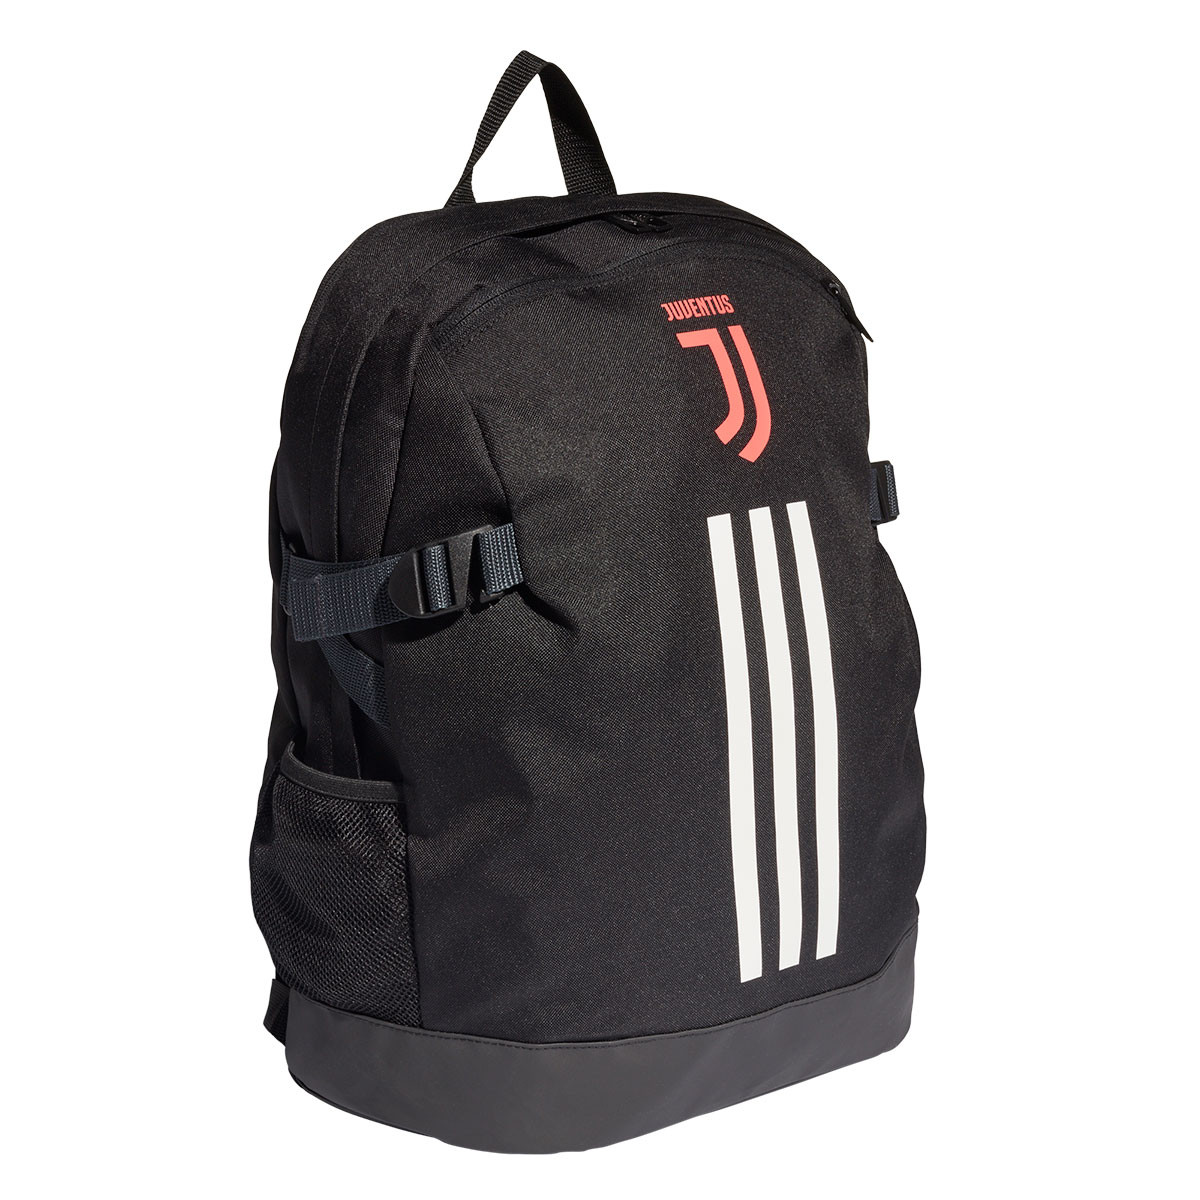 Backpack adidas Juventus BP 2019-2020 